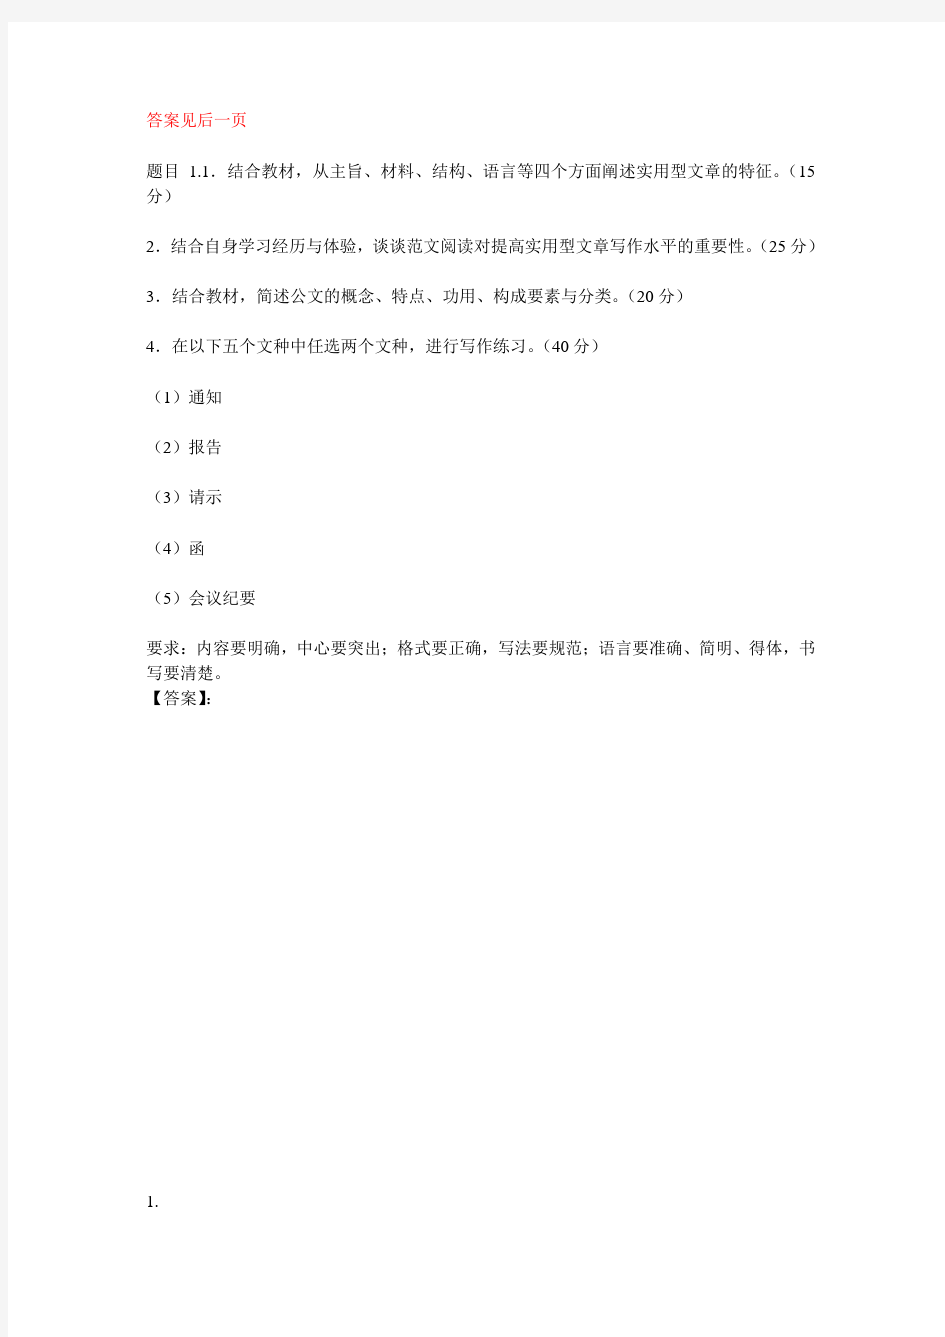 国开电大应用写作(汉语)形考任务1参考答案